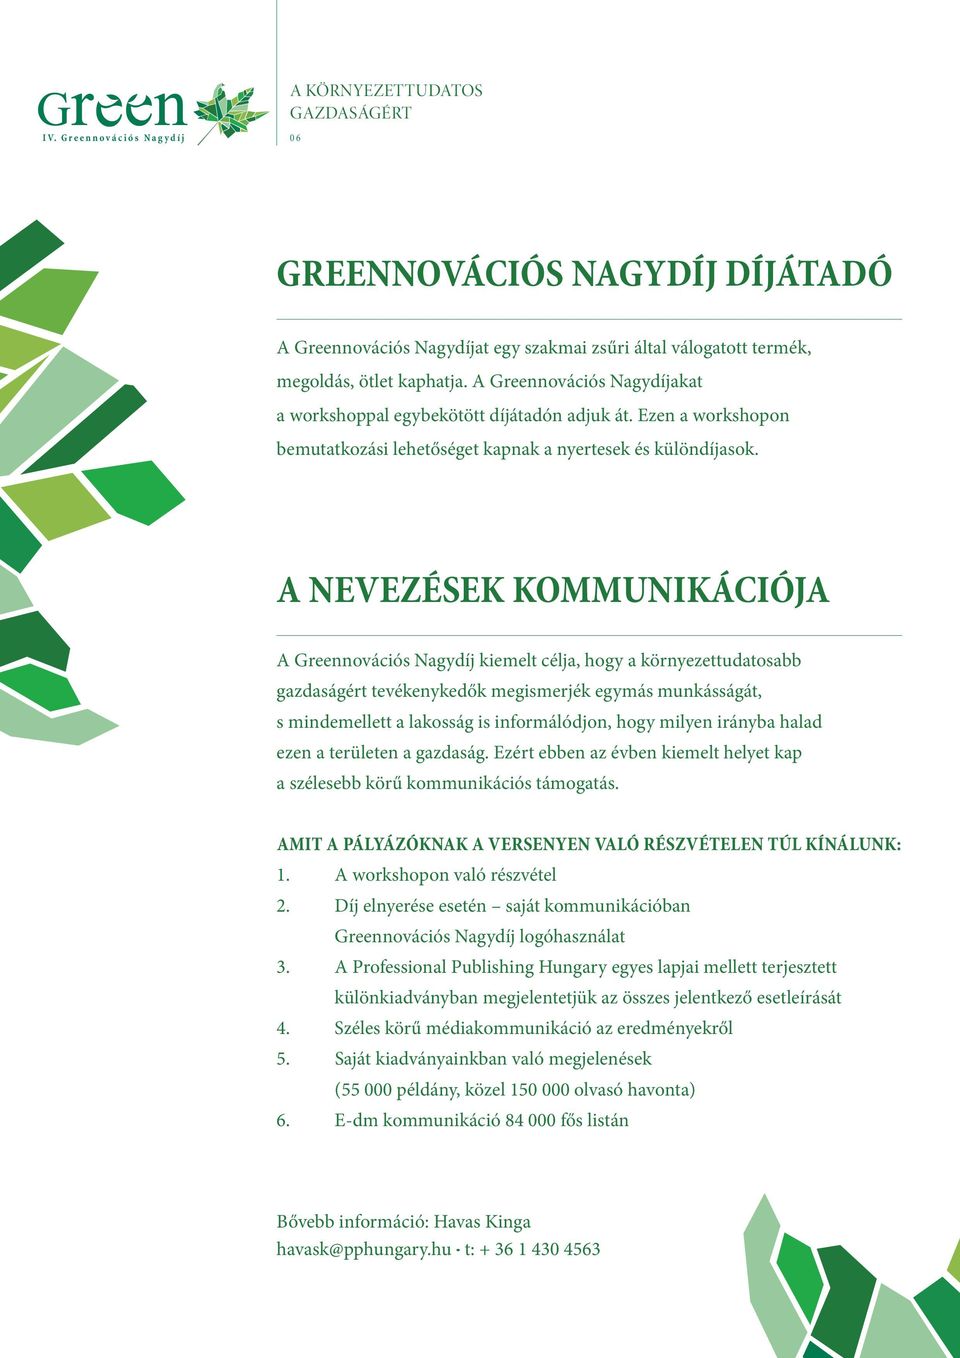 A NEVEZÉSEK KOMMUNIKÁCIÓJA A Greennovációs Nagydíj kiemelt célja, hogy a környezettudatosabb gazdaságért tevékenykedők megismerjék egymás munkásságát, s mindemellett a lakosság is informálódjon, hogy